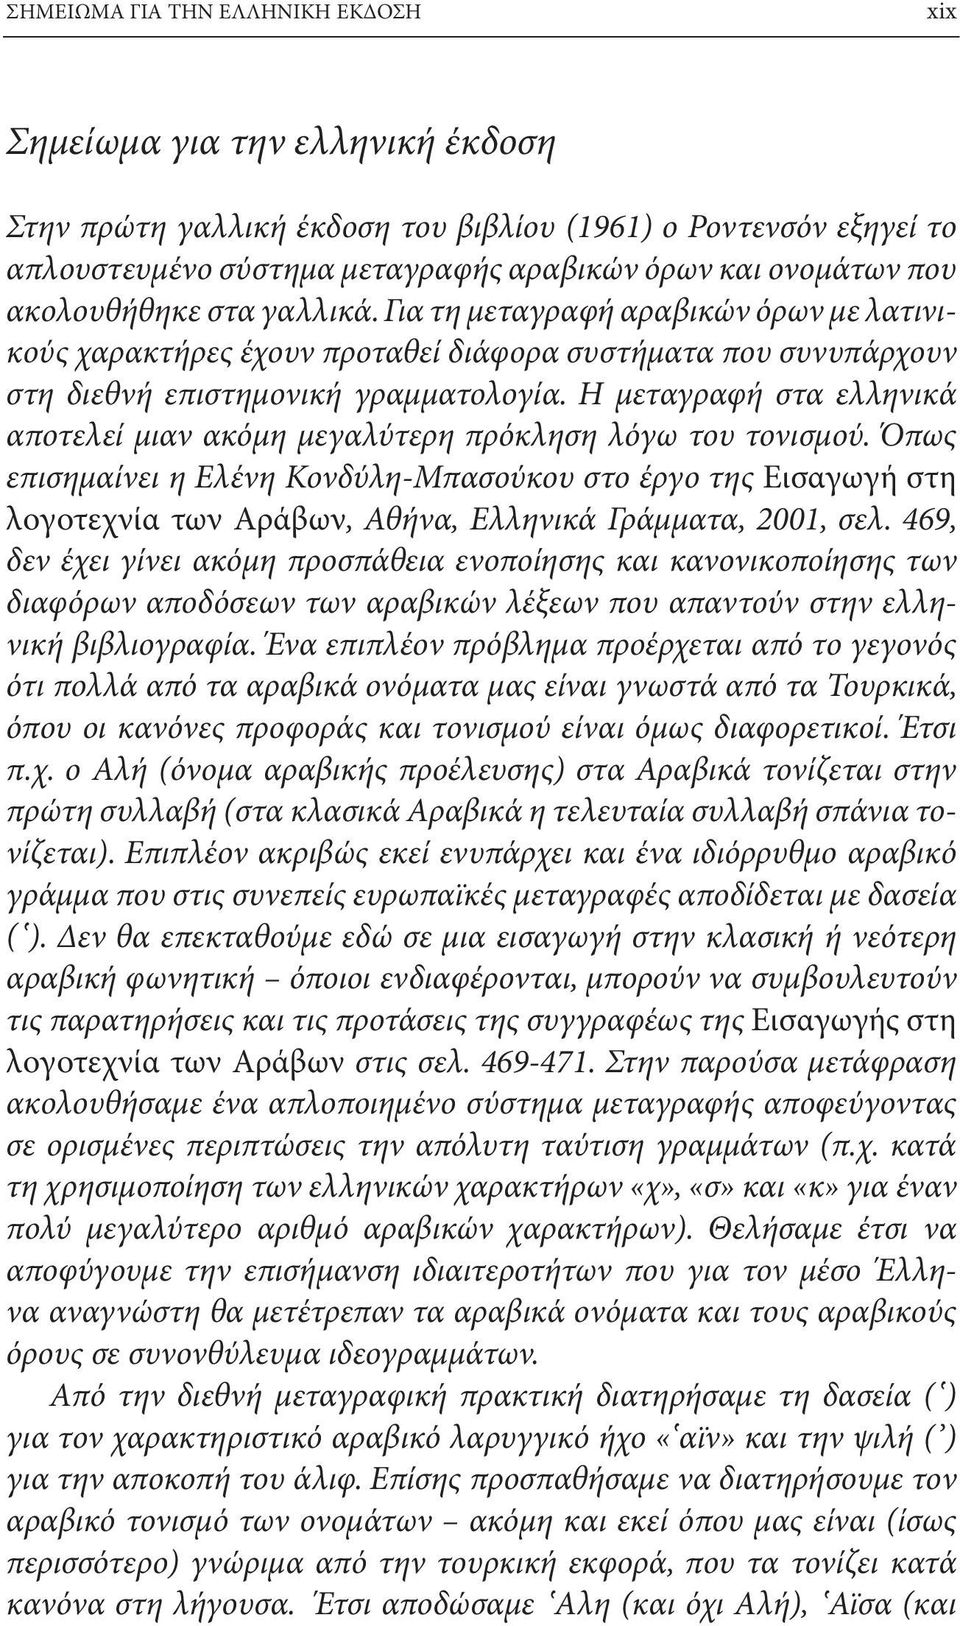 Η μεταγραφή στα ελληνικά αποτελεί μιαν ακόμη μεγαλύτερη πρόκληση λόγω του τονισμού.